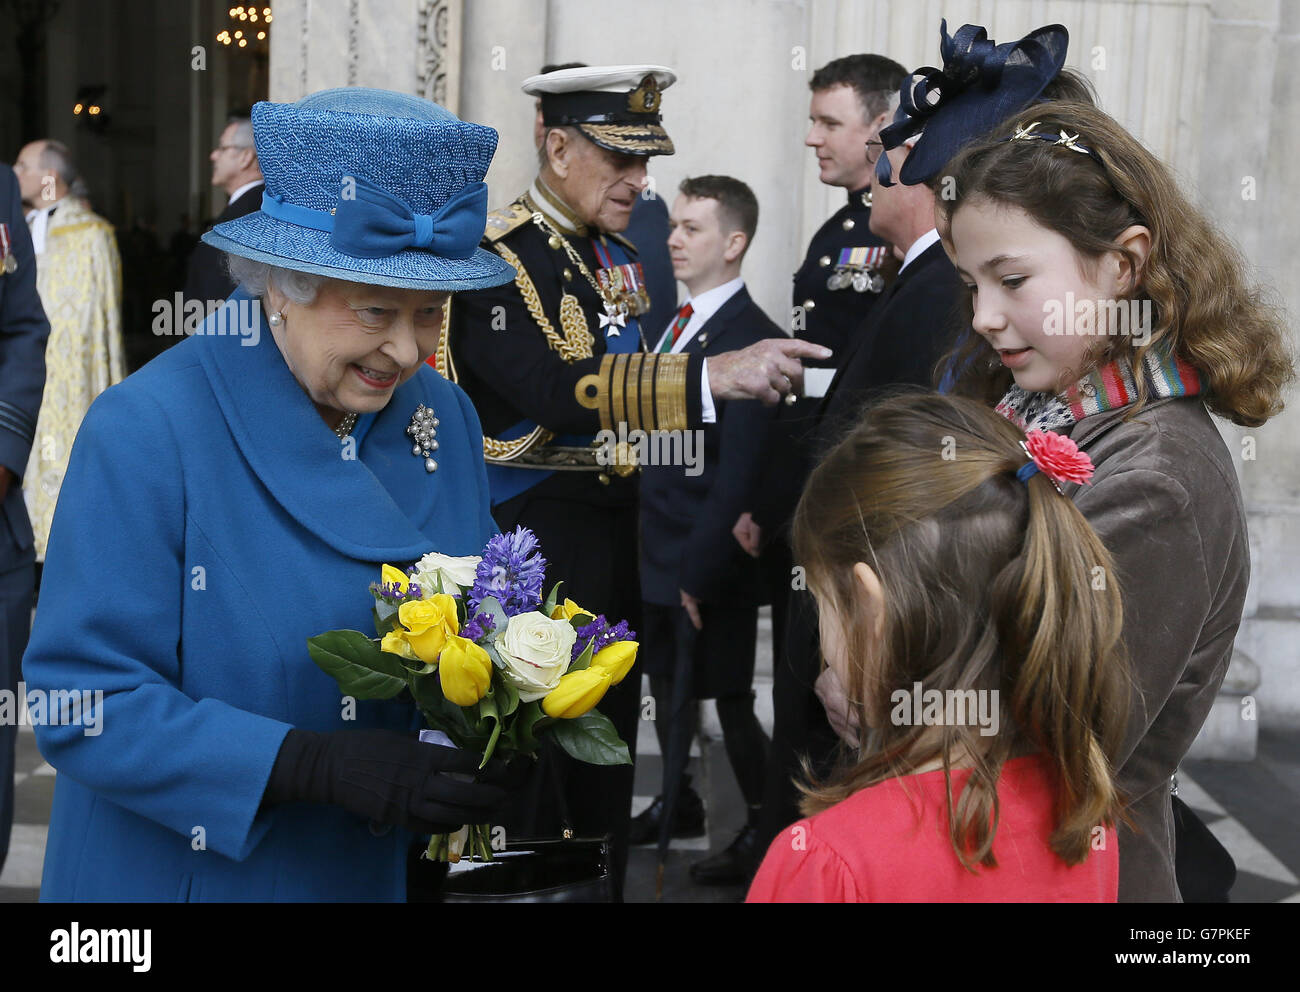 La regina Elisabetta II riceve i fiori dalle suore Sophie e Hannah Thorneloe, il cui padre il tenente colonnello Rupert Thoneloe è stato ucciso in Afghanistan, in quanto hanno partecipato a un servizio di commemorazione per celebrare la fine delle operazioni di combattimento in Afghanistan presso la cattedrale di St Pau, Londra. Foto Stock